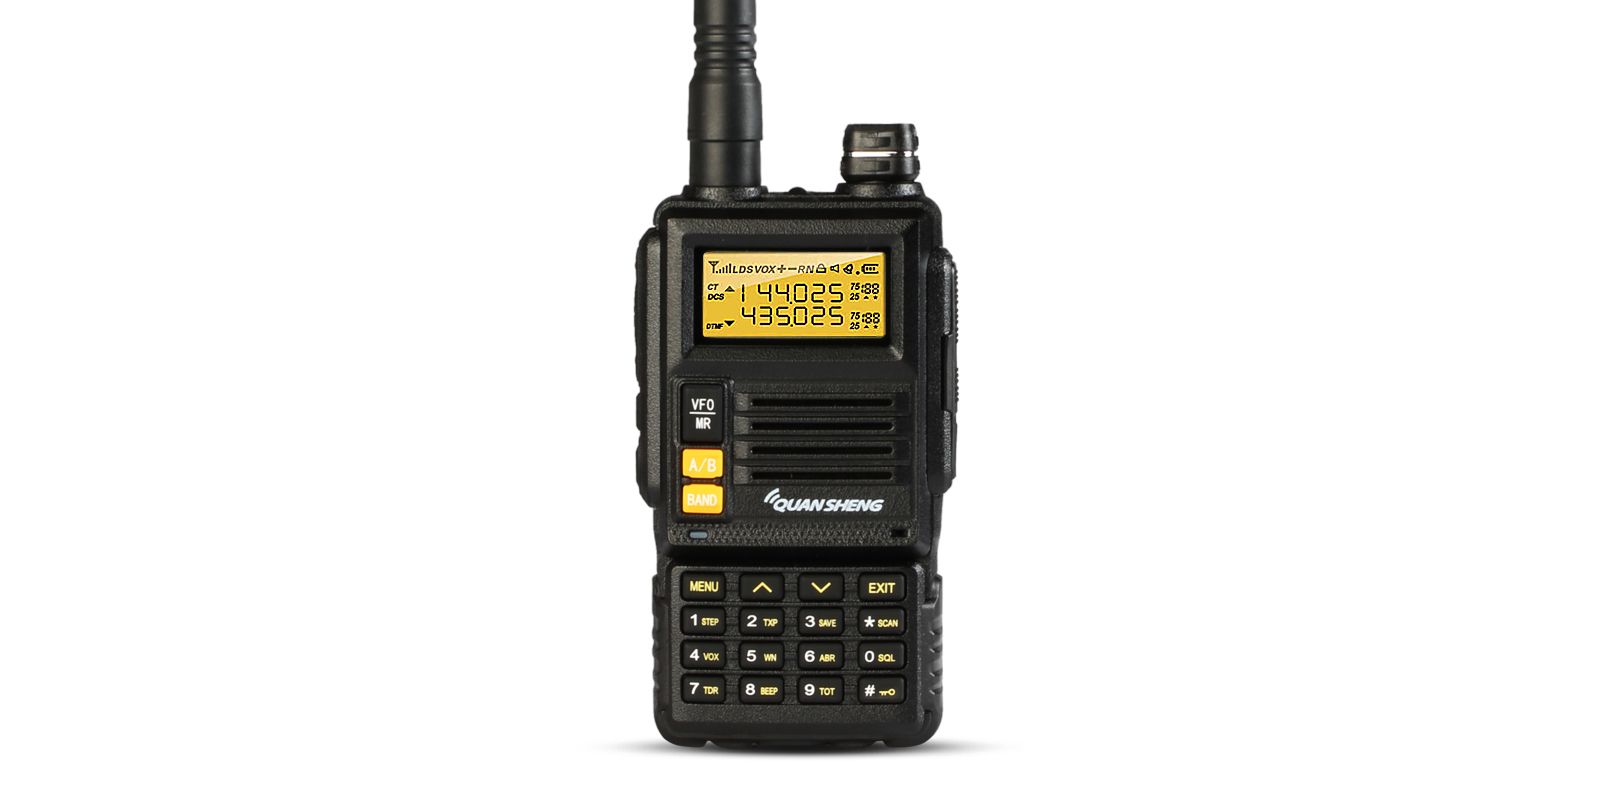 QUANSHENG-TG-K4ATUV-128-Channels-Mini-Two-Way-Dual-Band-400480MHz-Handheld-Radio-Walkie-Talkie-1340454